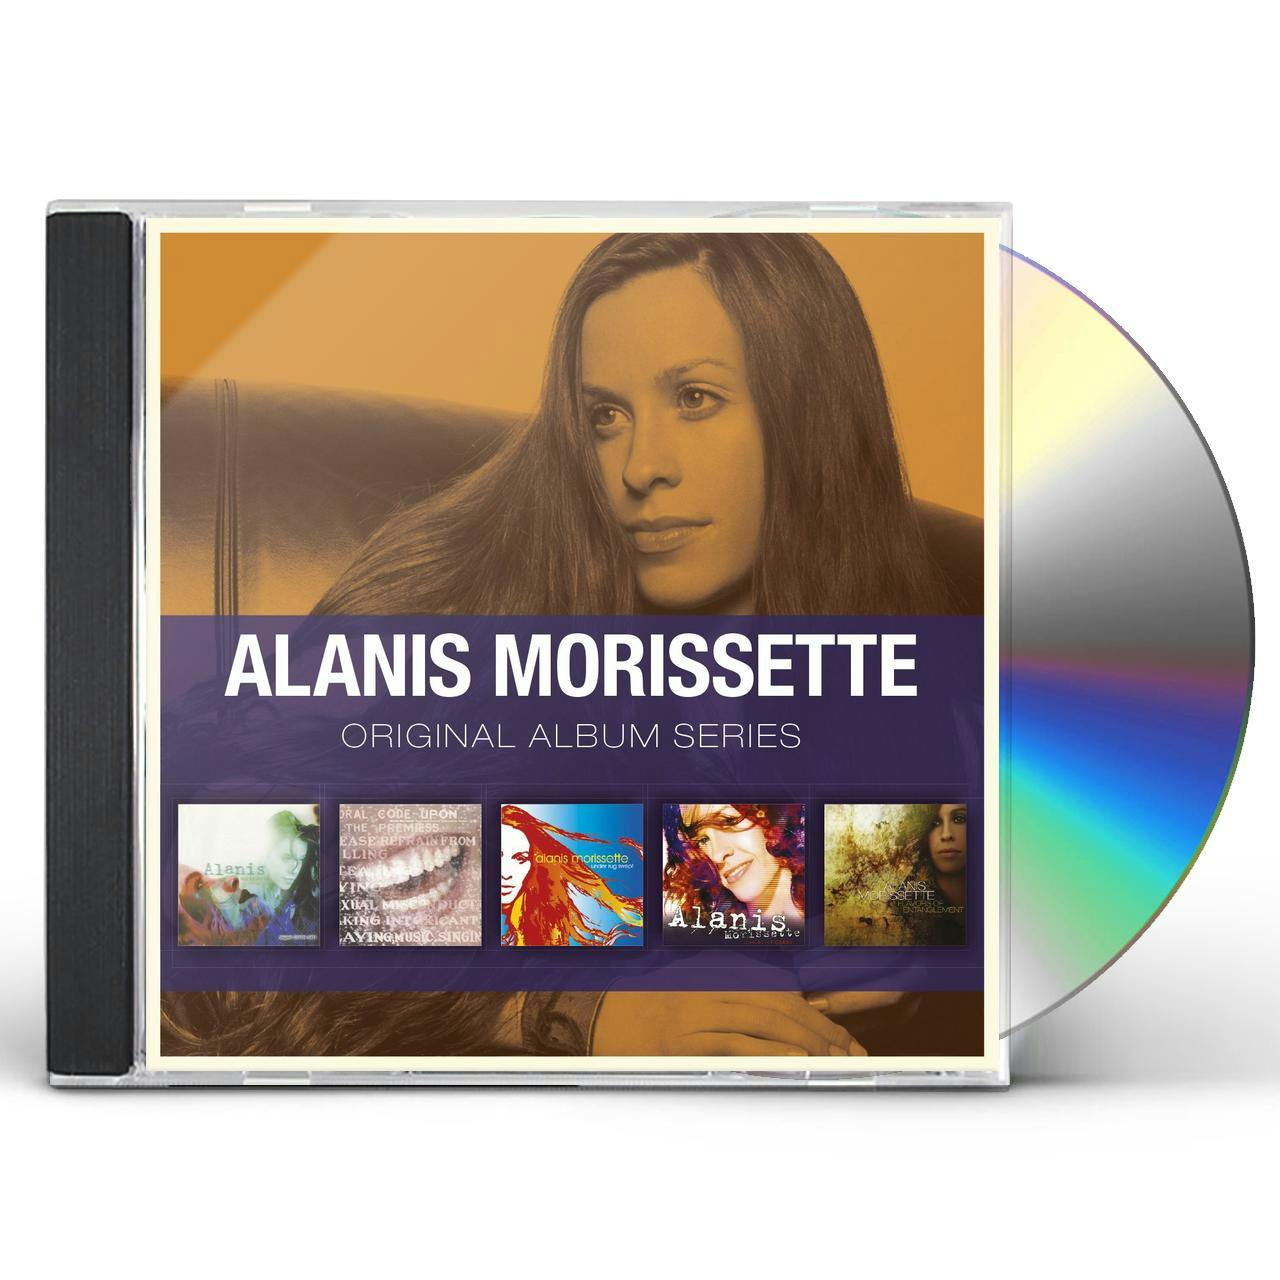 Alanis Morissette ORIGINAL ALBUM SERIES CD